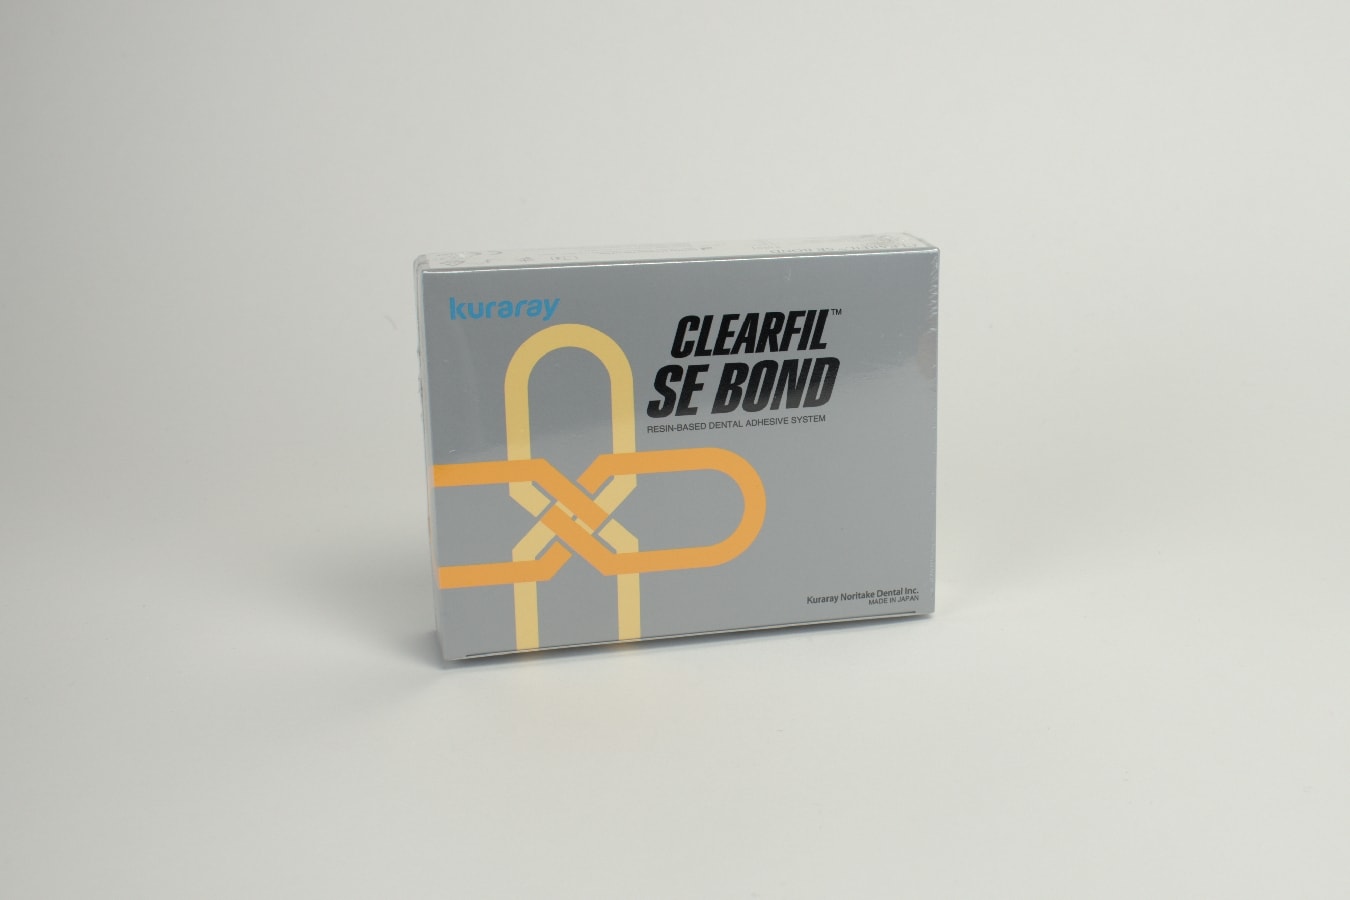 Clearfil SE Bond Intro